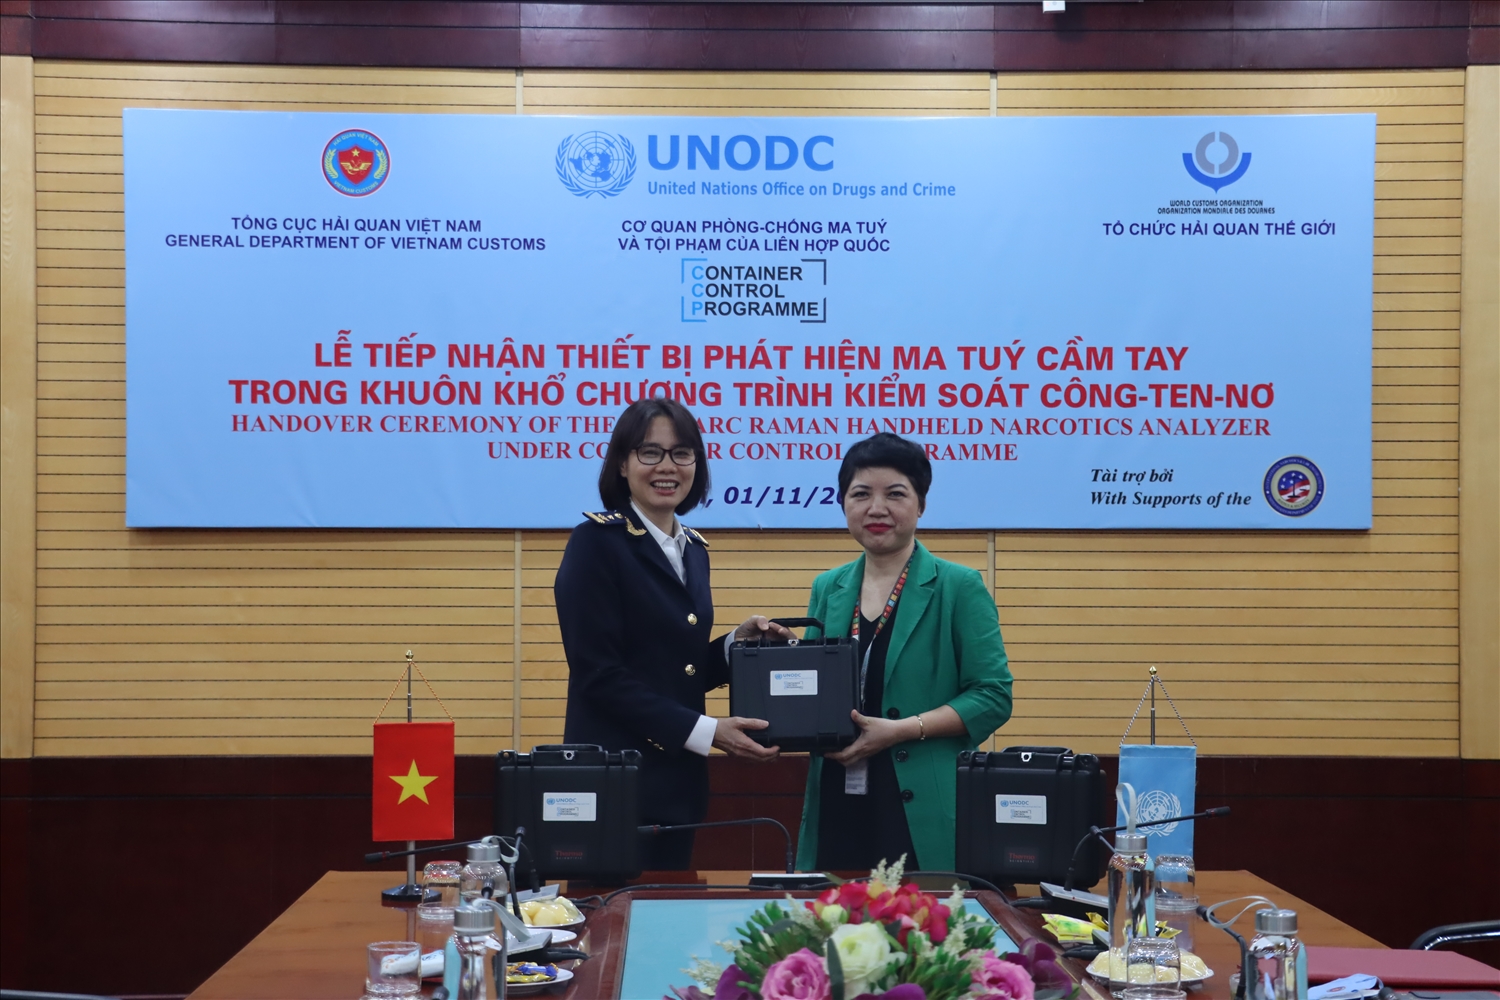  Hải quan Việt Nam tiếp nhận thiết bị quang phổ Trunarc Raman phát hiện ma túy cầm tay từ UNOC ngày 11/11/2021.